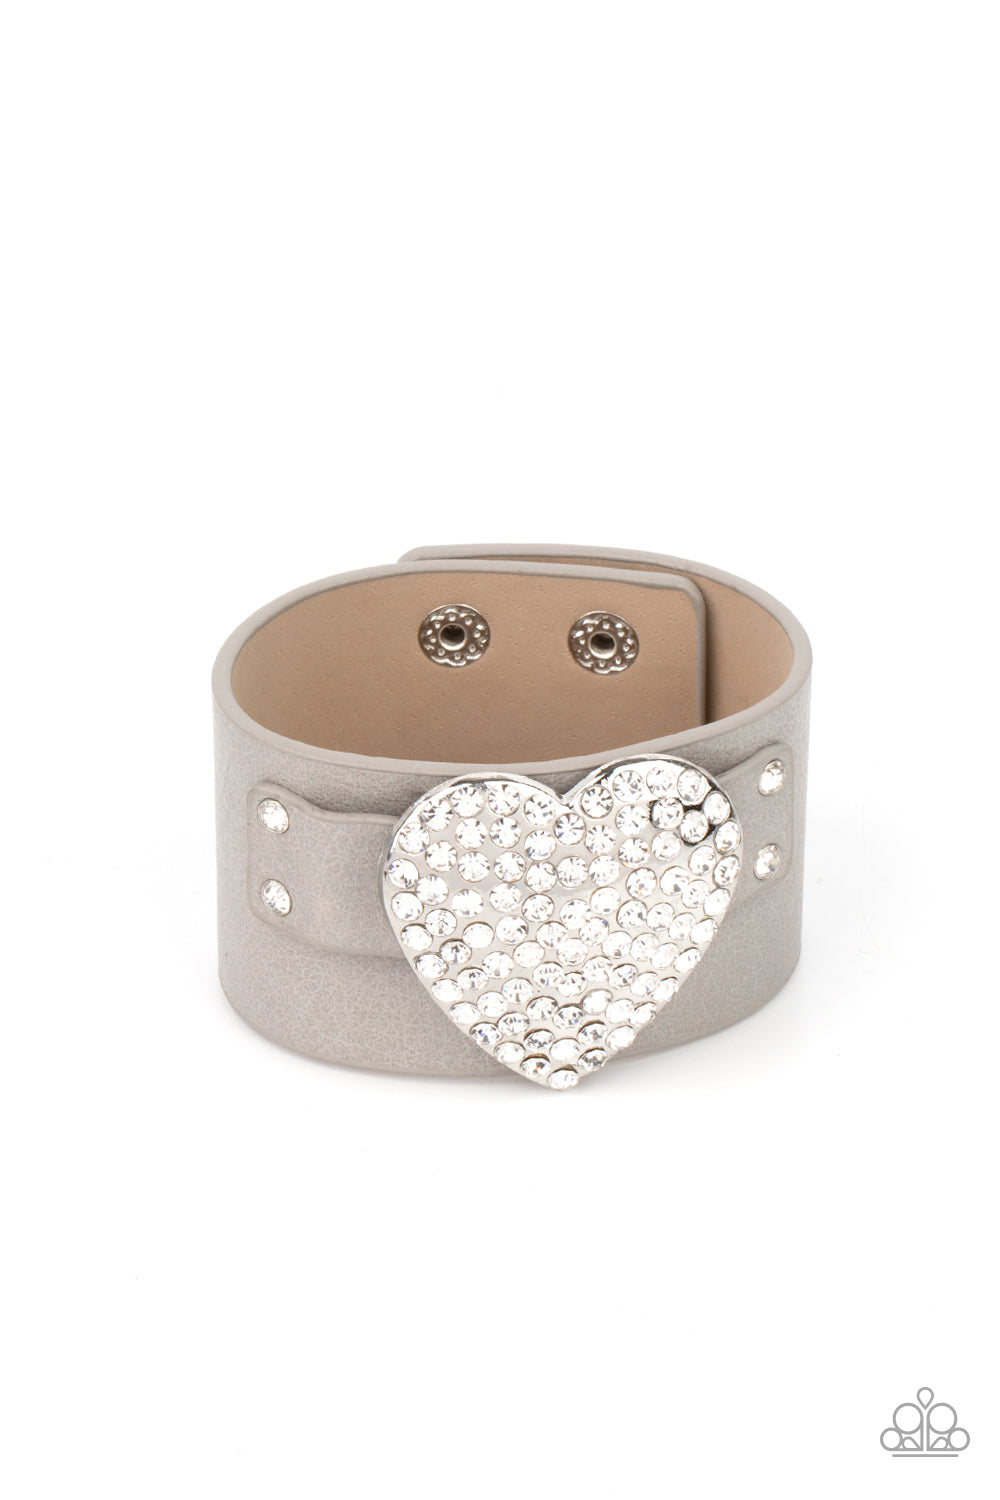 Flauntable Flirt - silver - Paparazzi bracelet